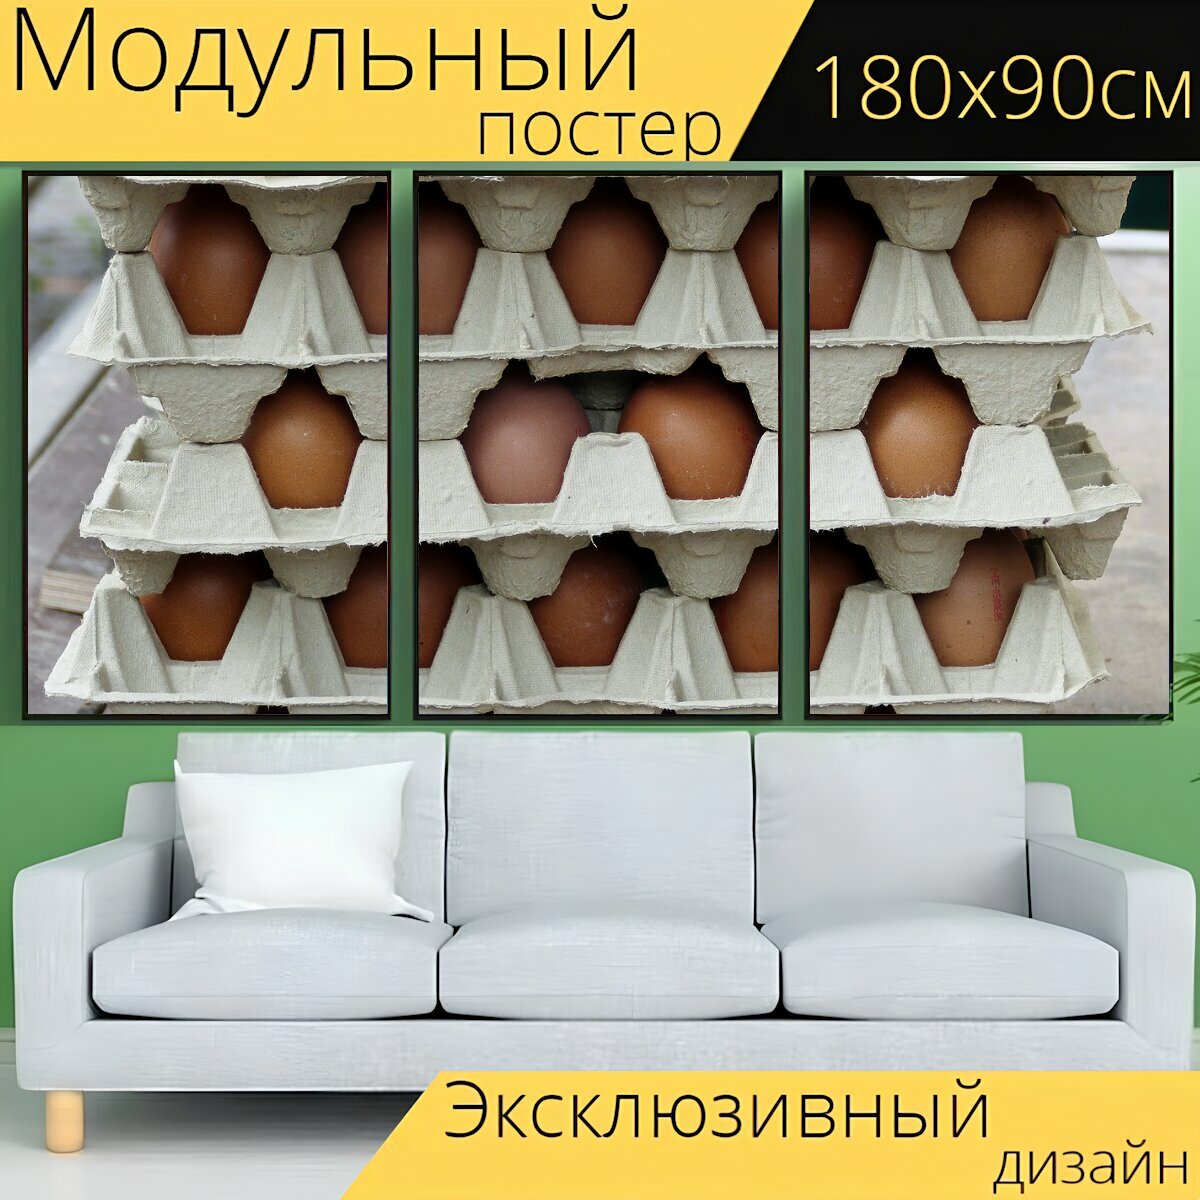 Модульный постер "Яйца, куриные яйца, коробка для яиц" 180 x 90 см. для интерьера